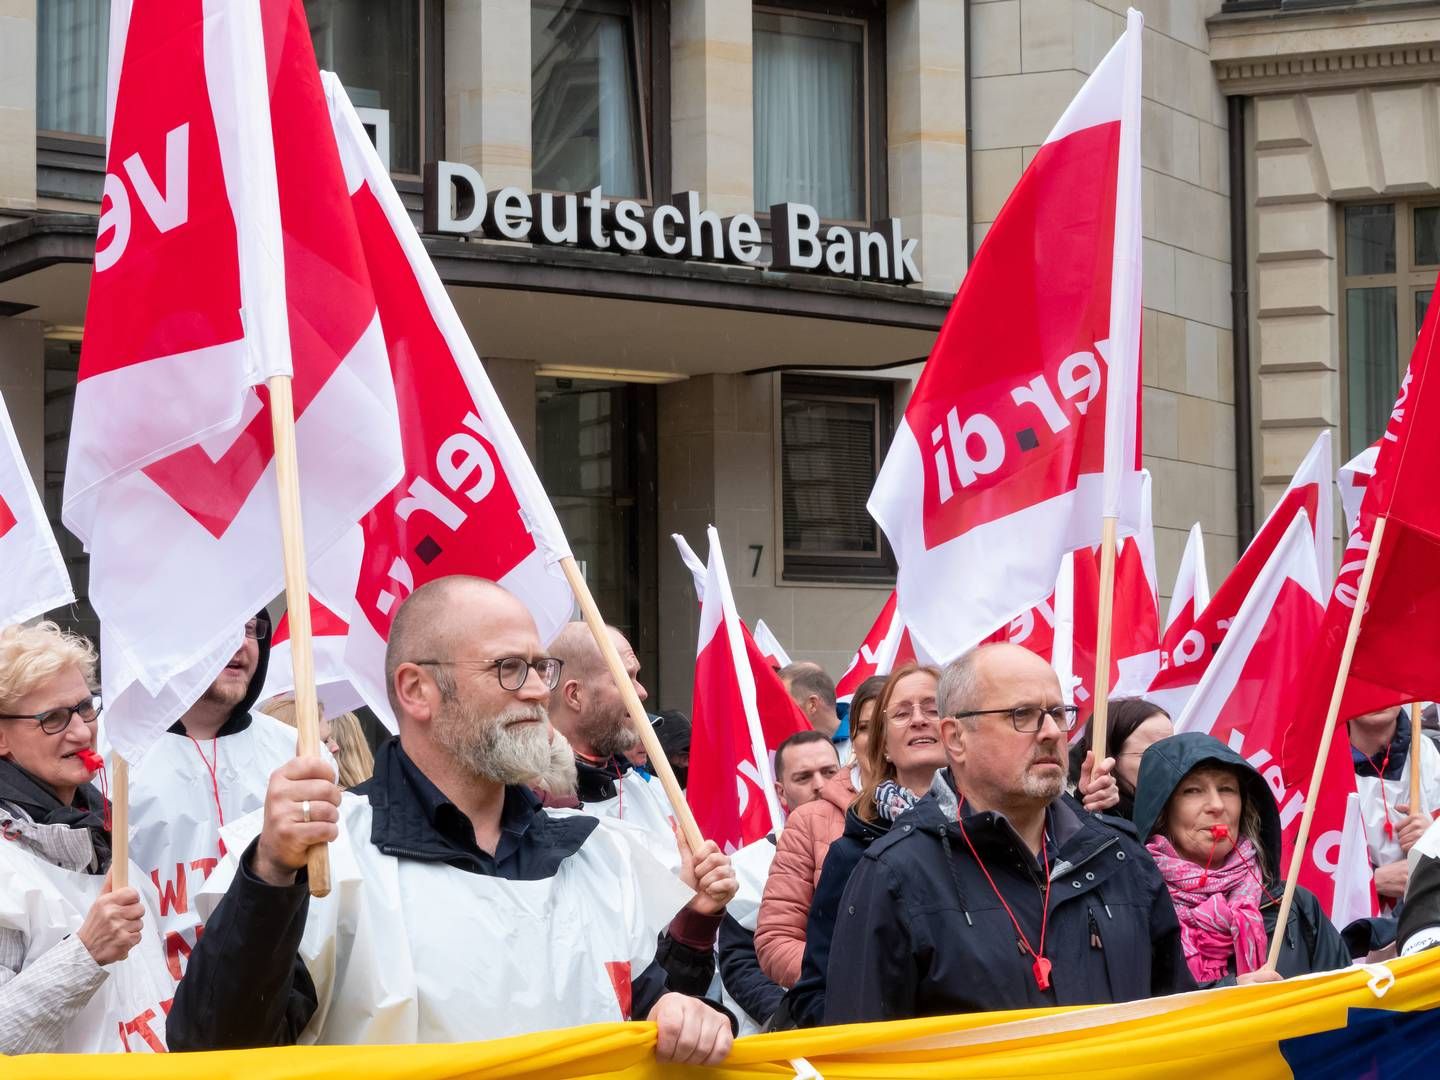 Für Montag und Dienstag hat die Gewerkschaft Verdi zu umfangreichen Arbeitsniederlegungen aufgerufen. | Photo: picture alliance/dpa | Bodo Marks